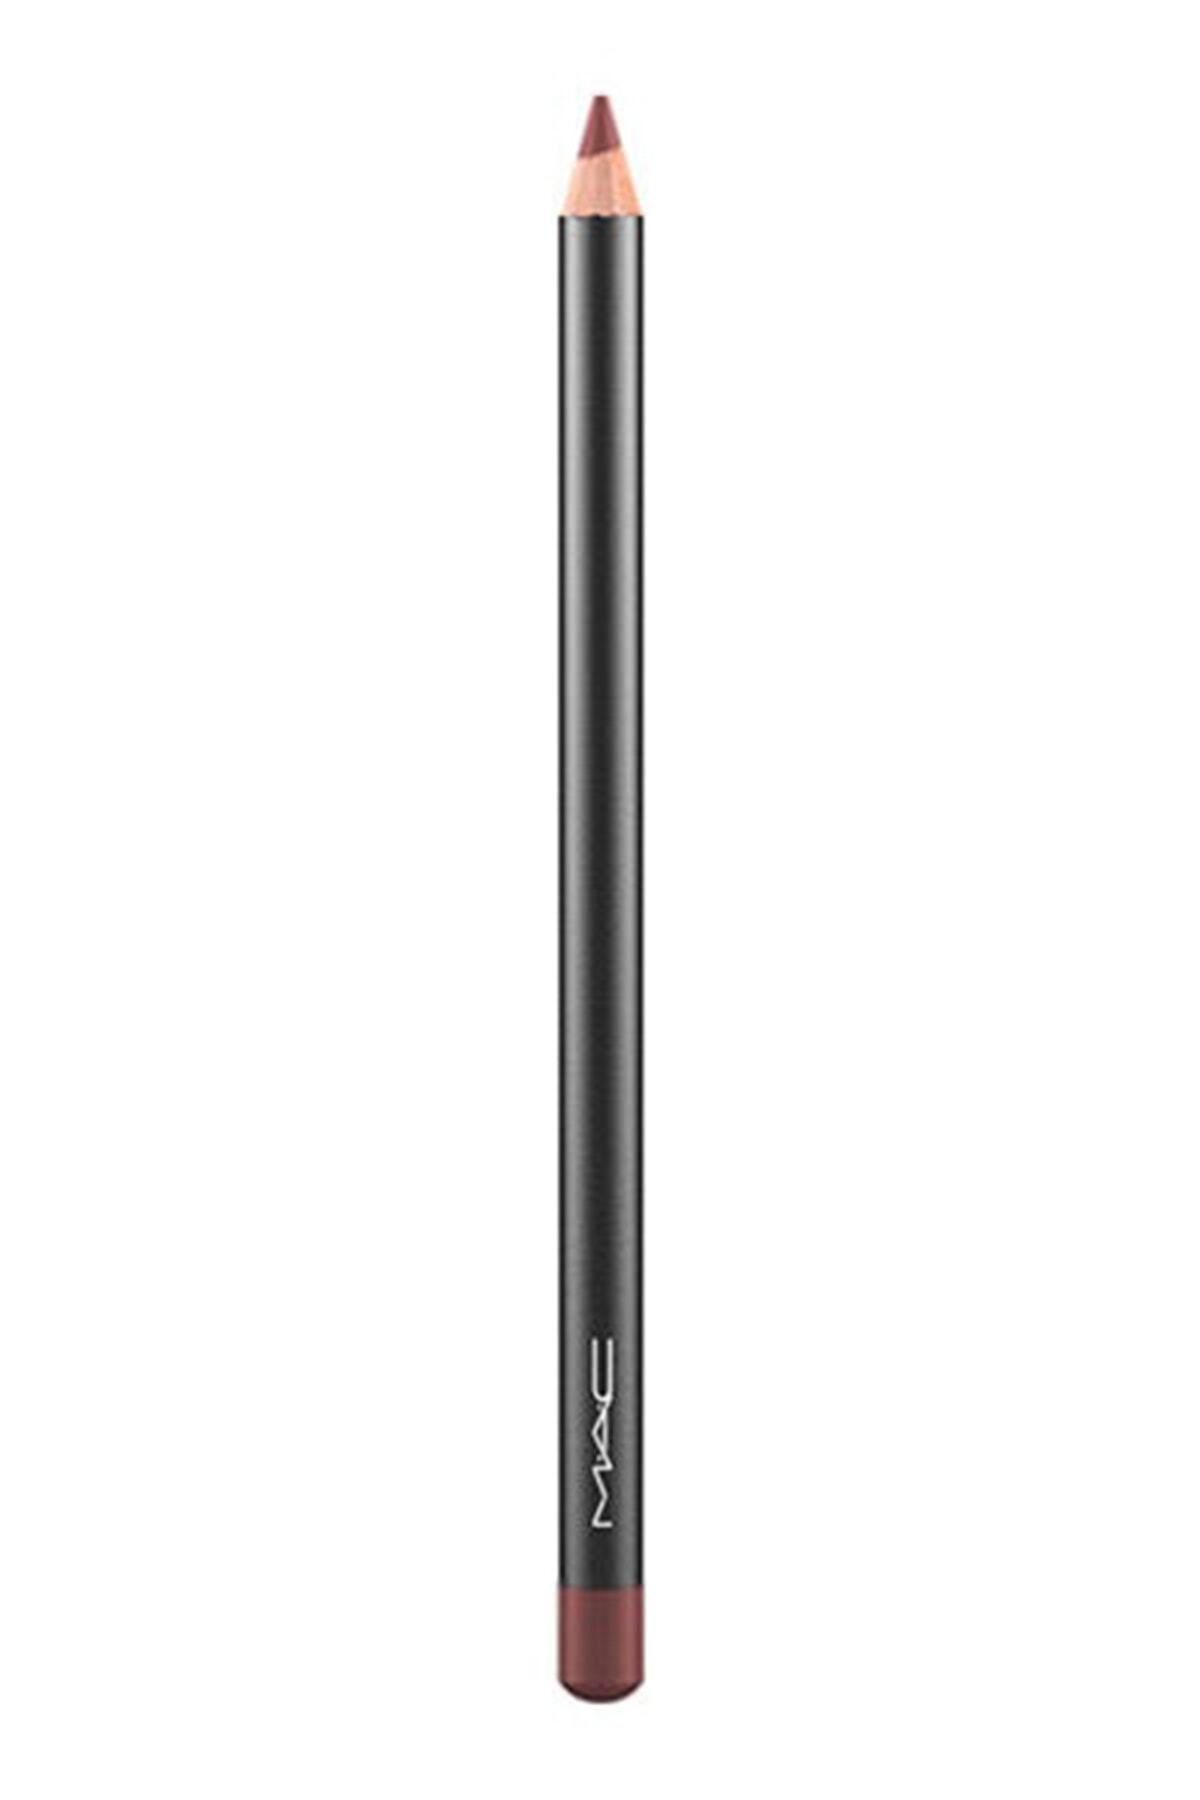 Mac Dudak Kalemi - Lip Pencil  Mahogany 1.45 g 773602430062